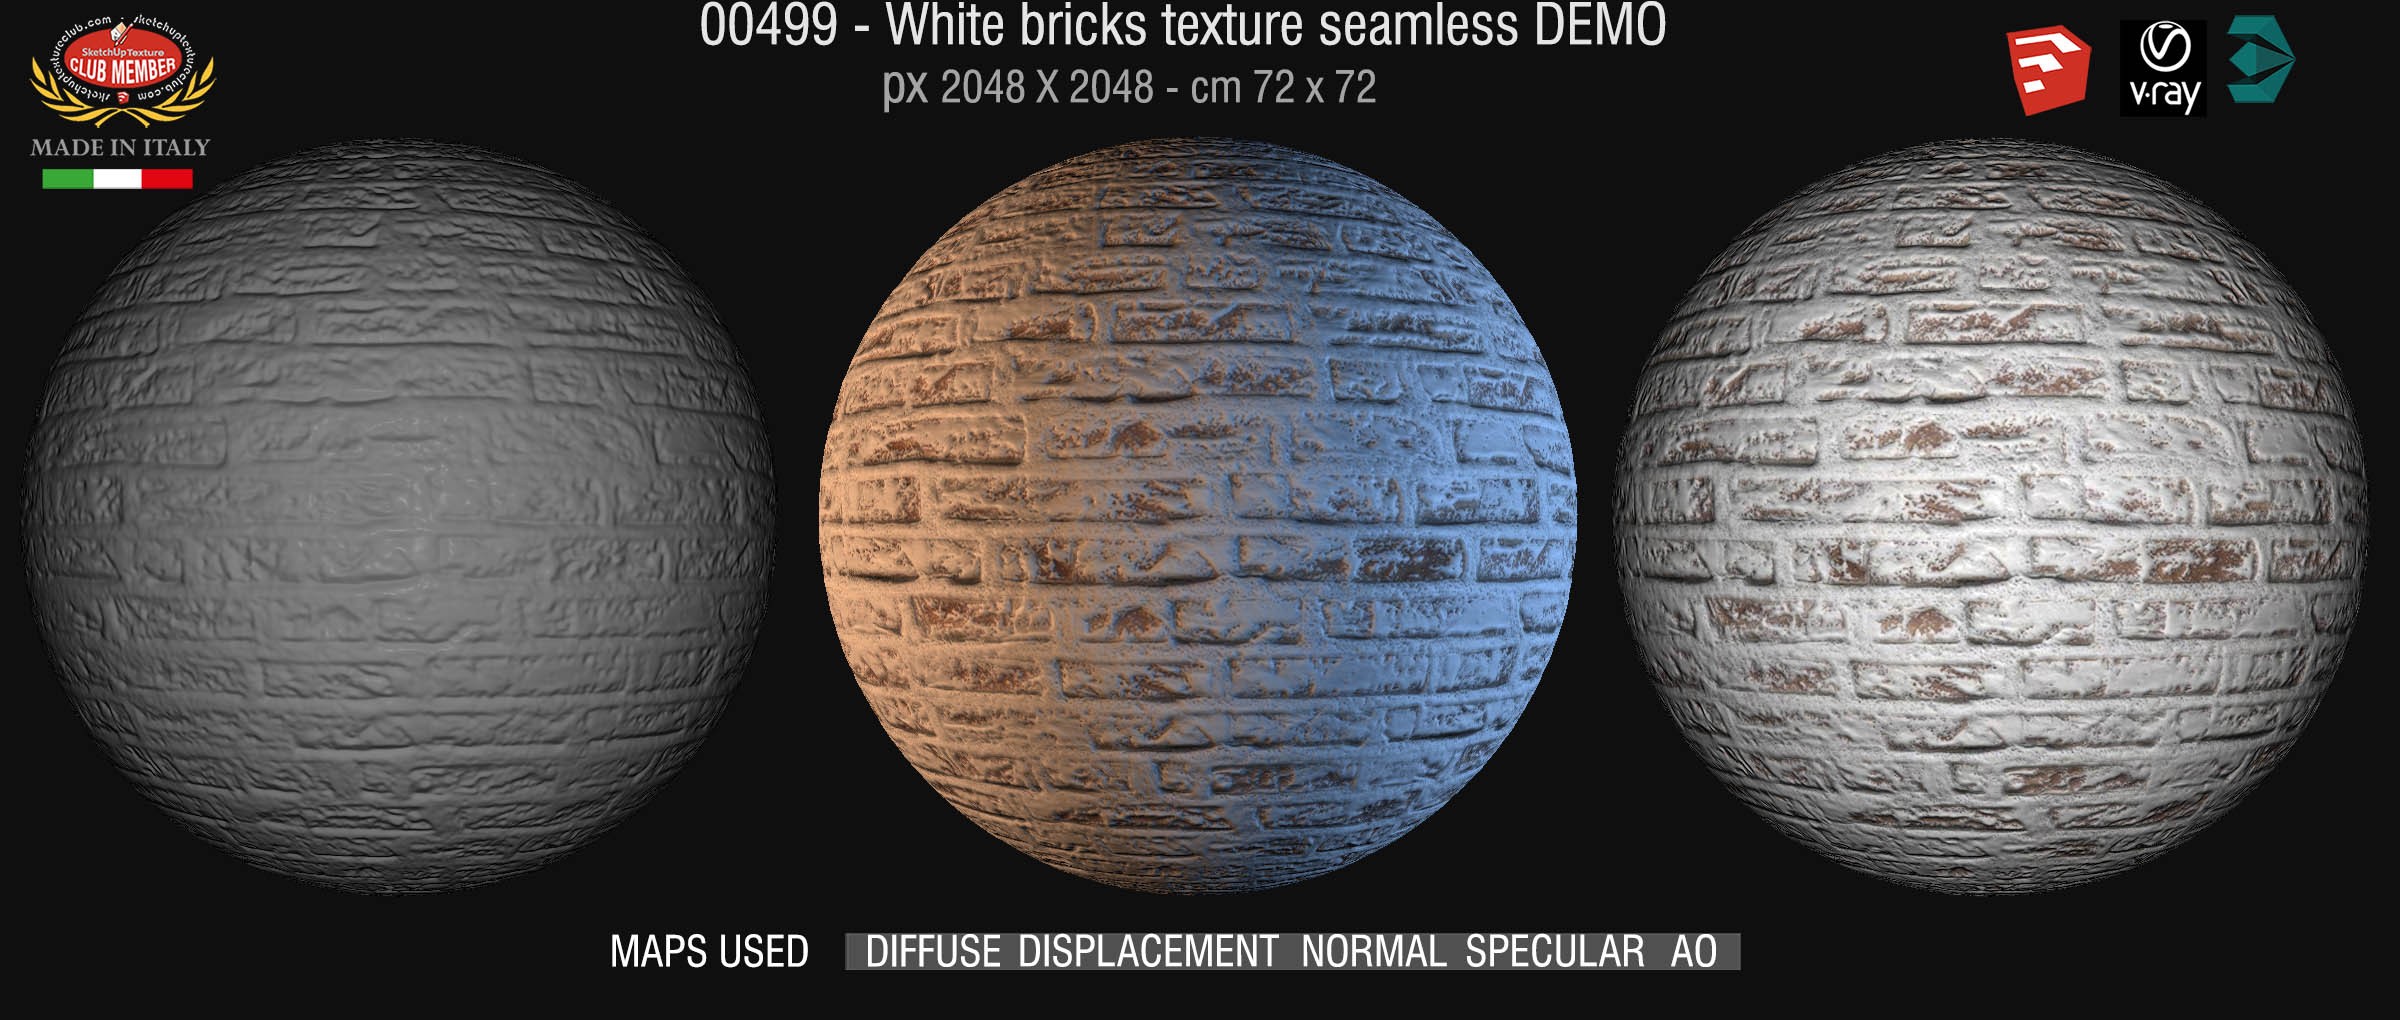 00499 White bricks texture seamless + maps DEMO